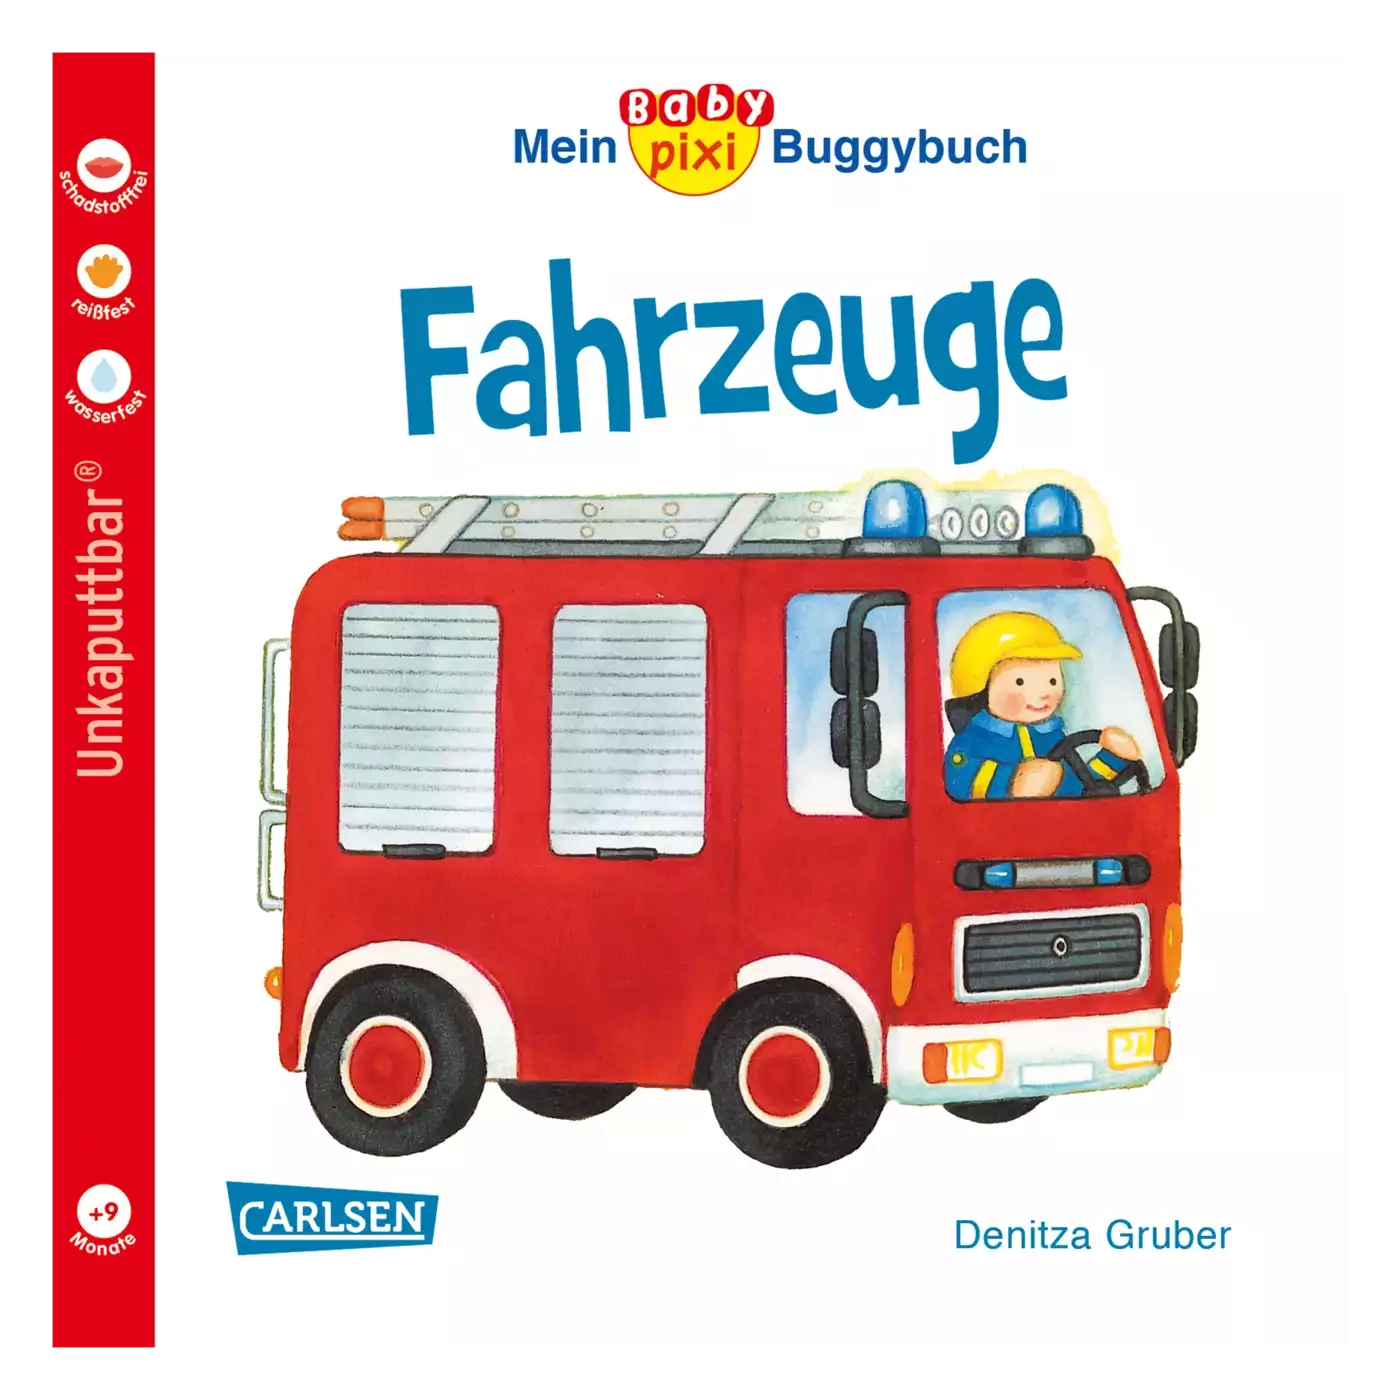 Baby Pixi Buggybuch: Fahrzeuge CARLSEN Weiß 2000571212589 1